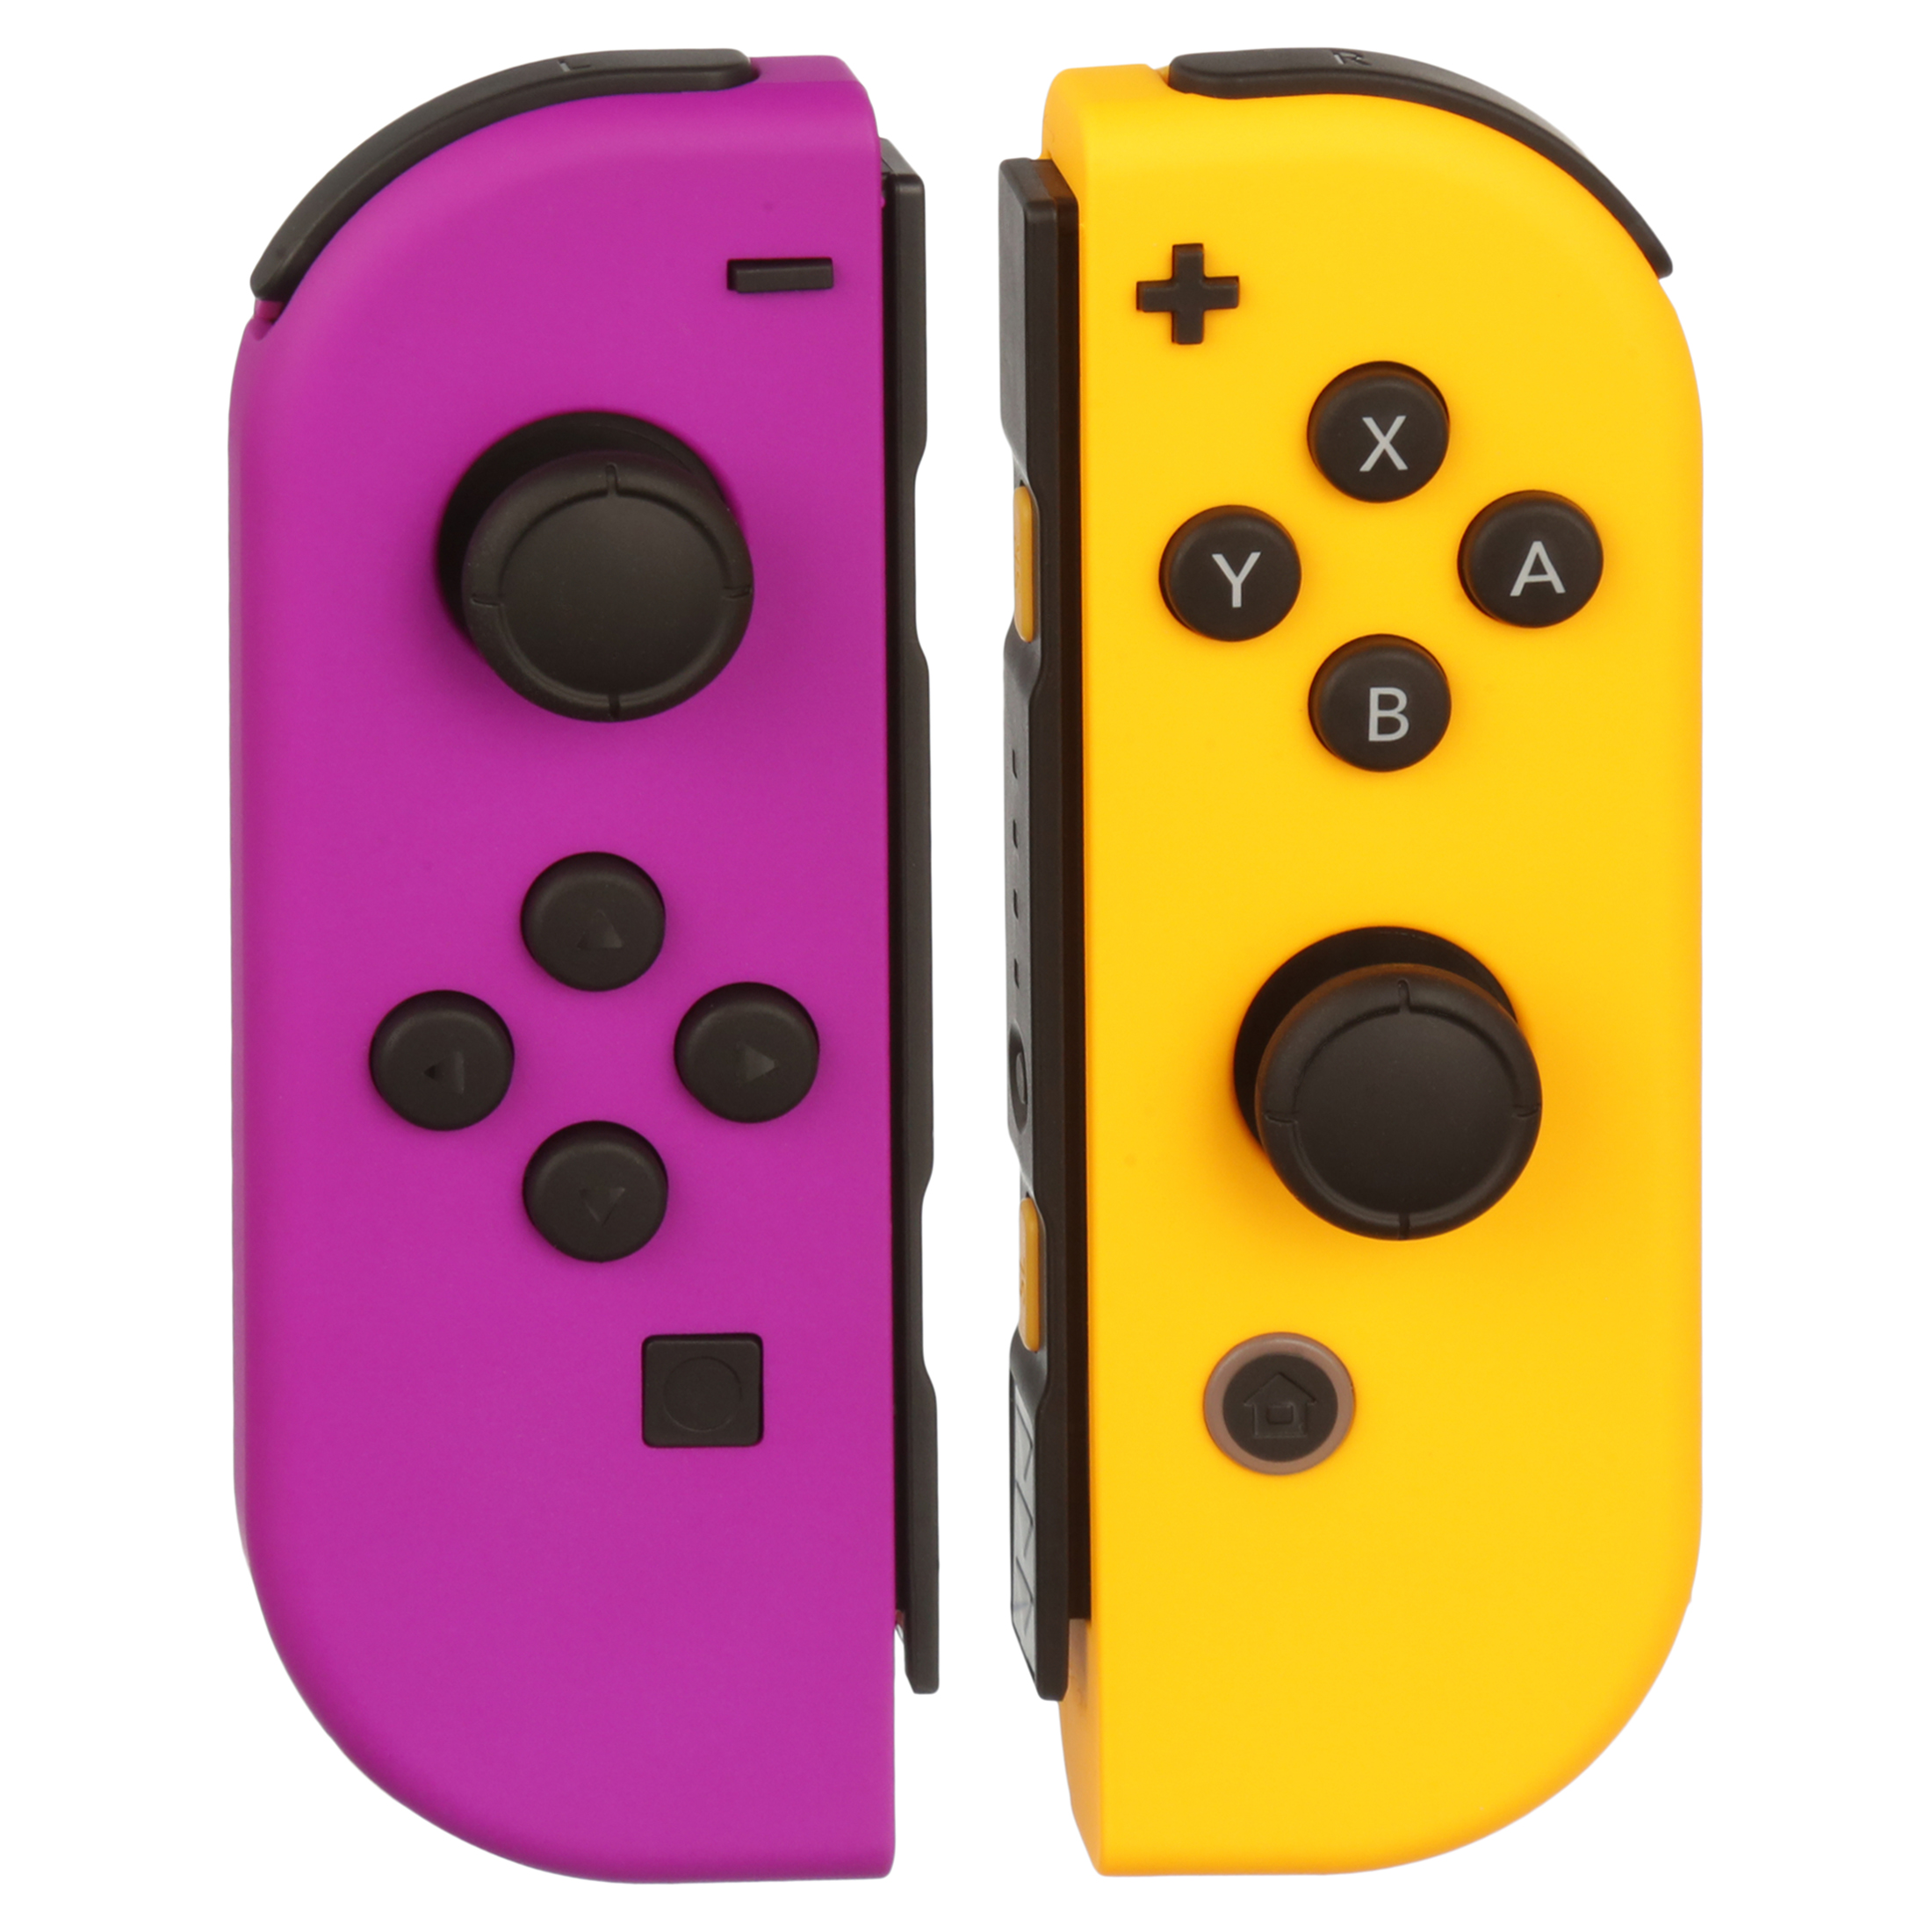 Nintendo Switch Joy-Con Pair, Neon Purple and Neon Orange - image 6 of 7